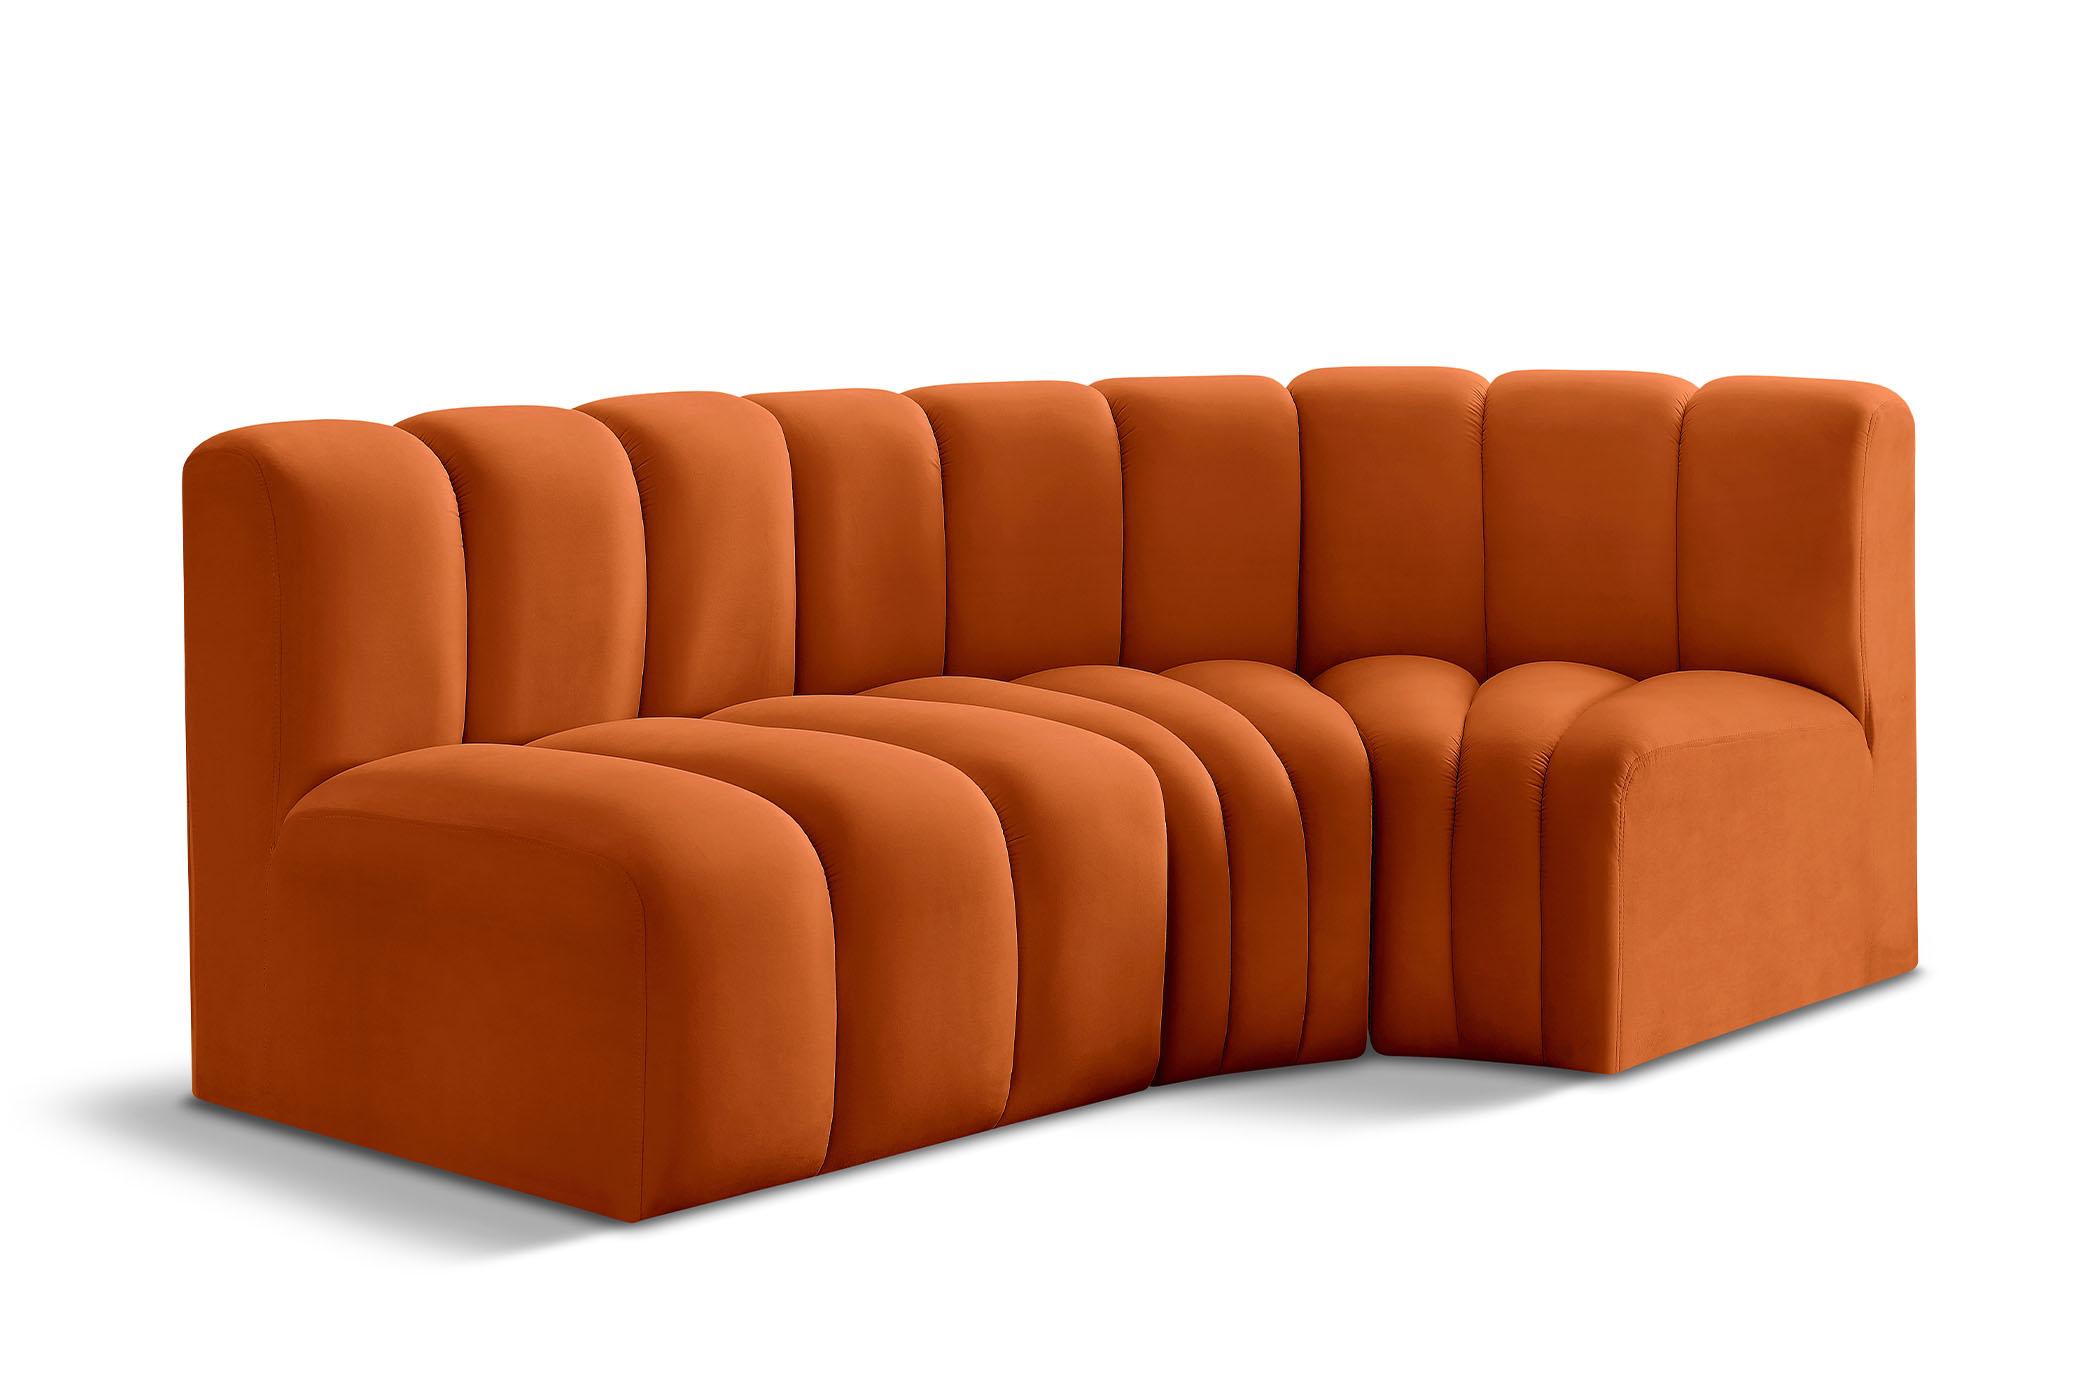 Contemporary, Modern Modular Sectional Sofa ARC 103Cognac-S3A 103Cognac-S3A in Cognac Velvet